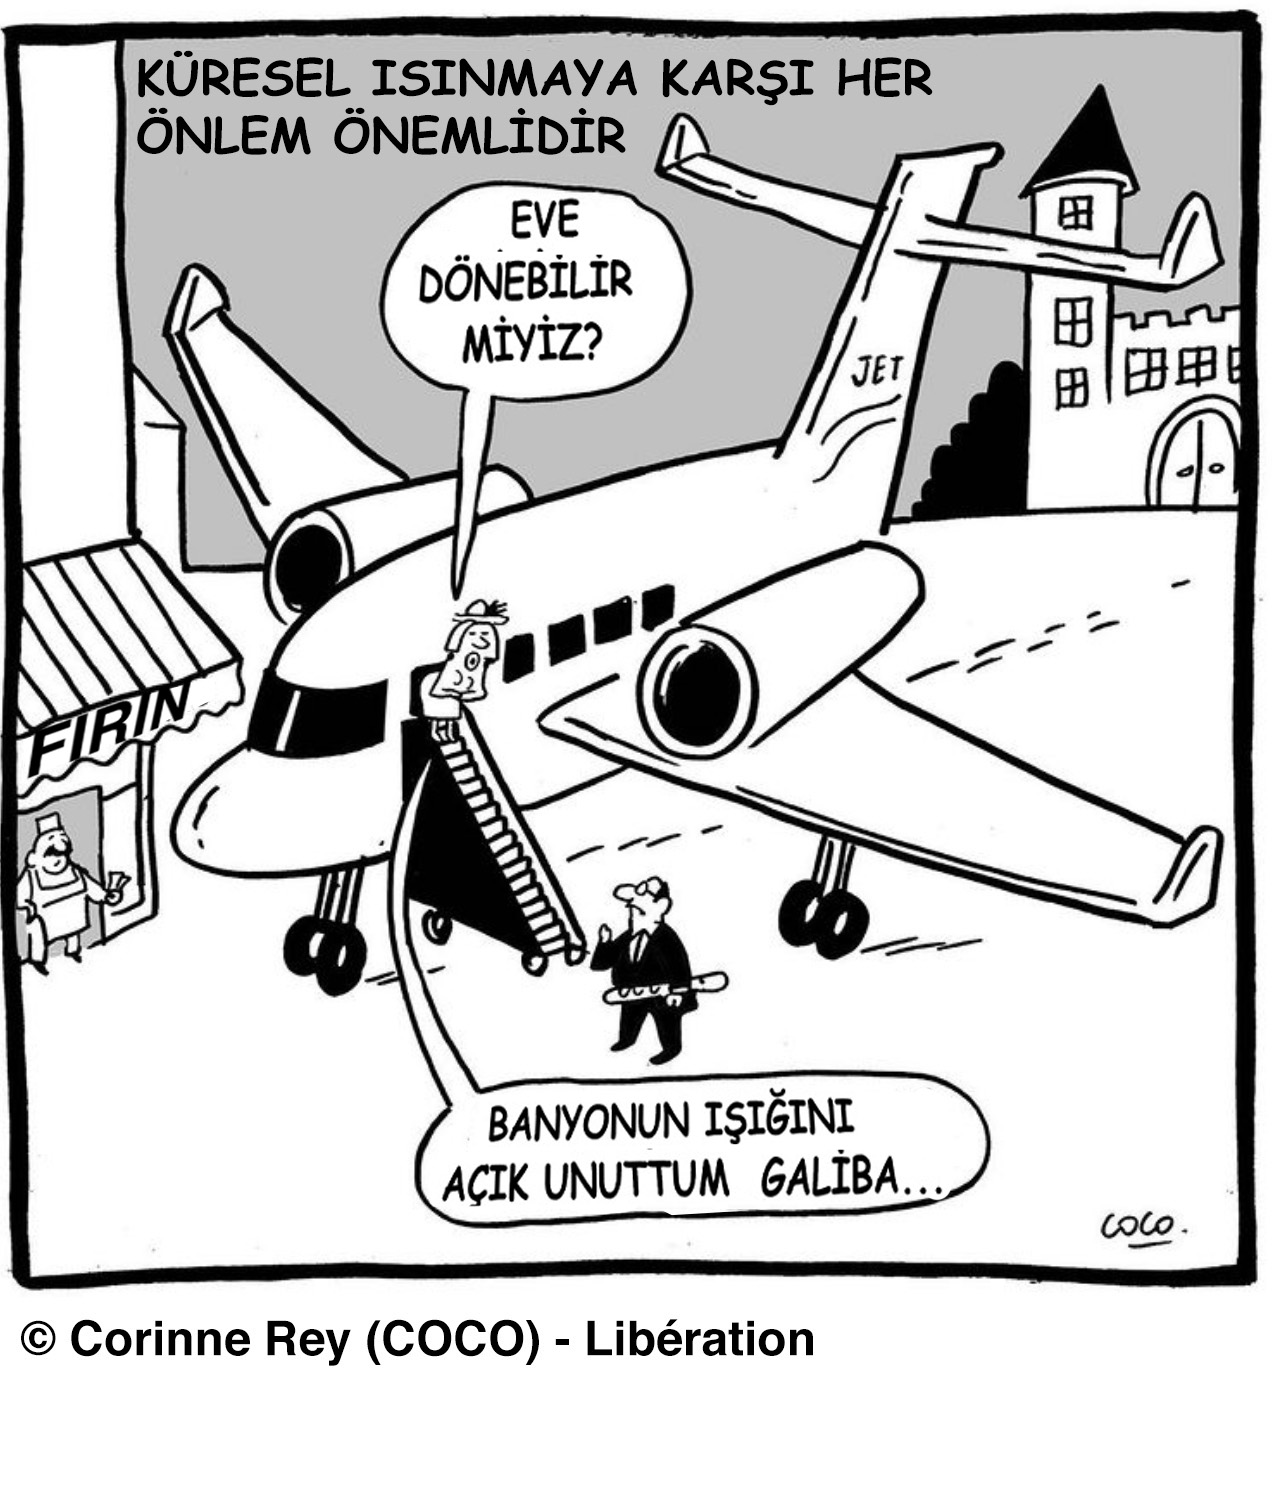 Coco'nun karikatürü